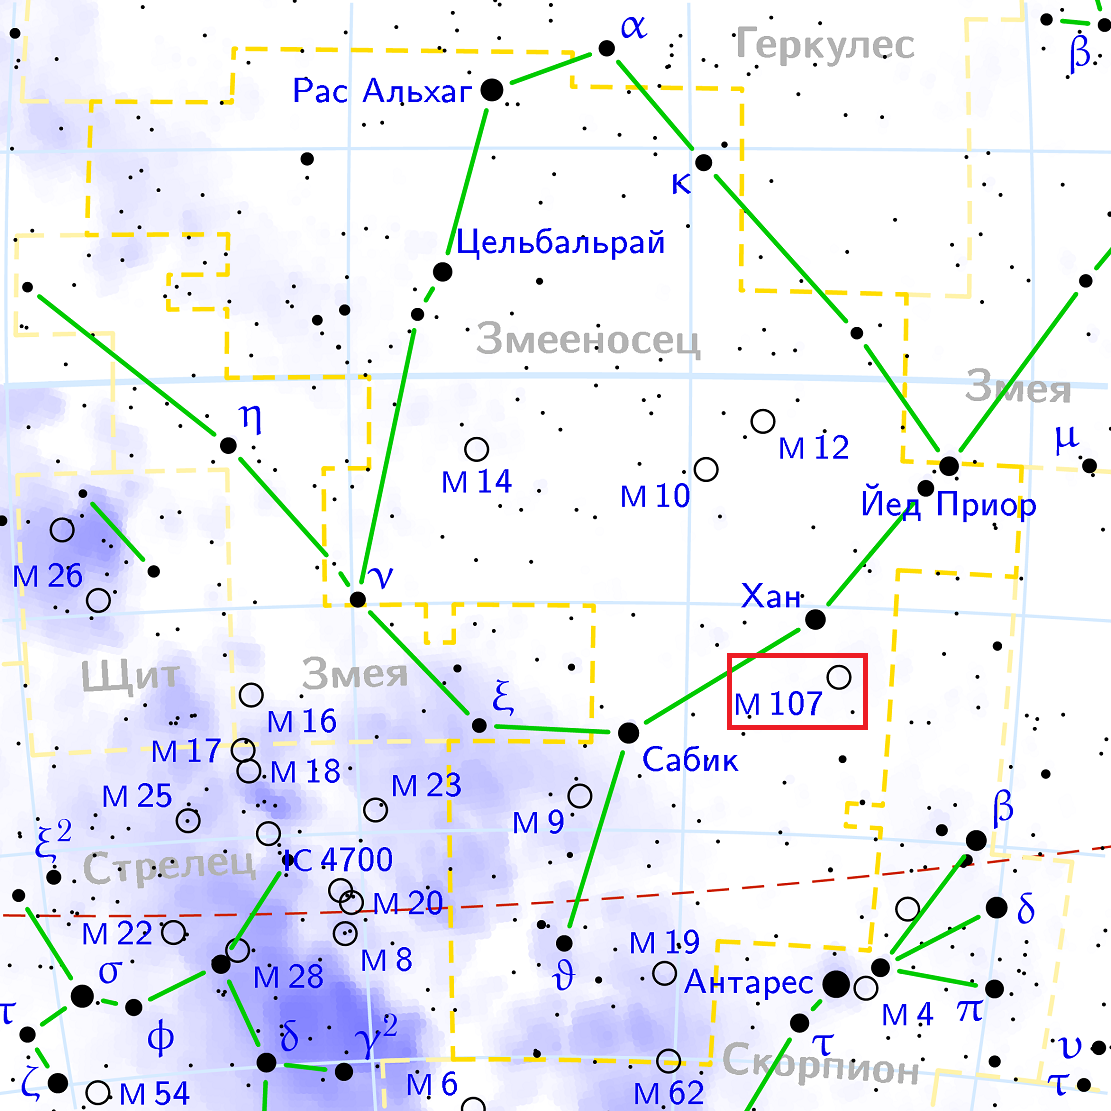 Position de l'objet Messier 107 dans la constellation du Serpentin